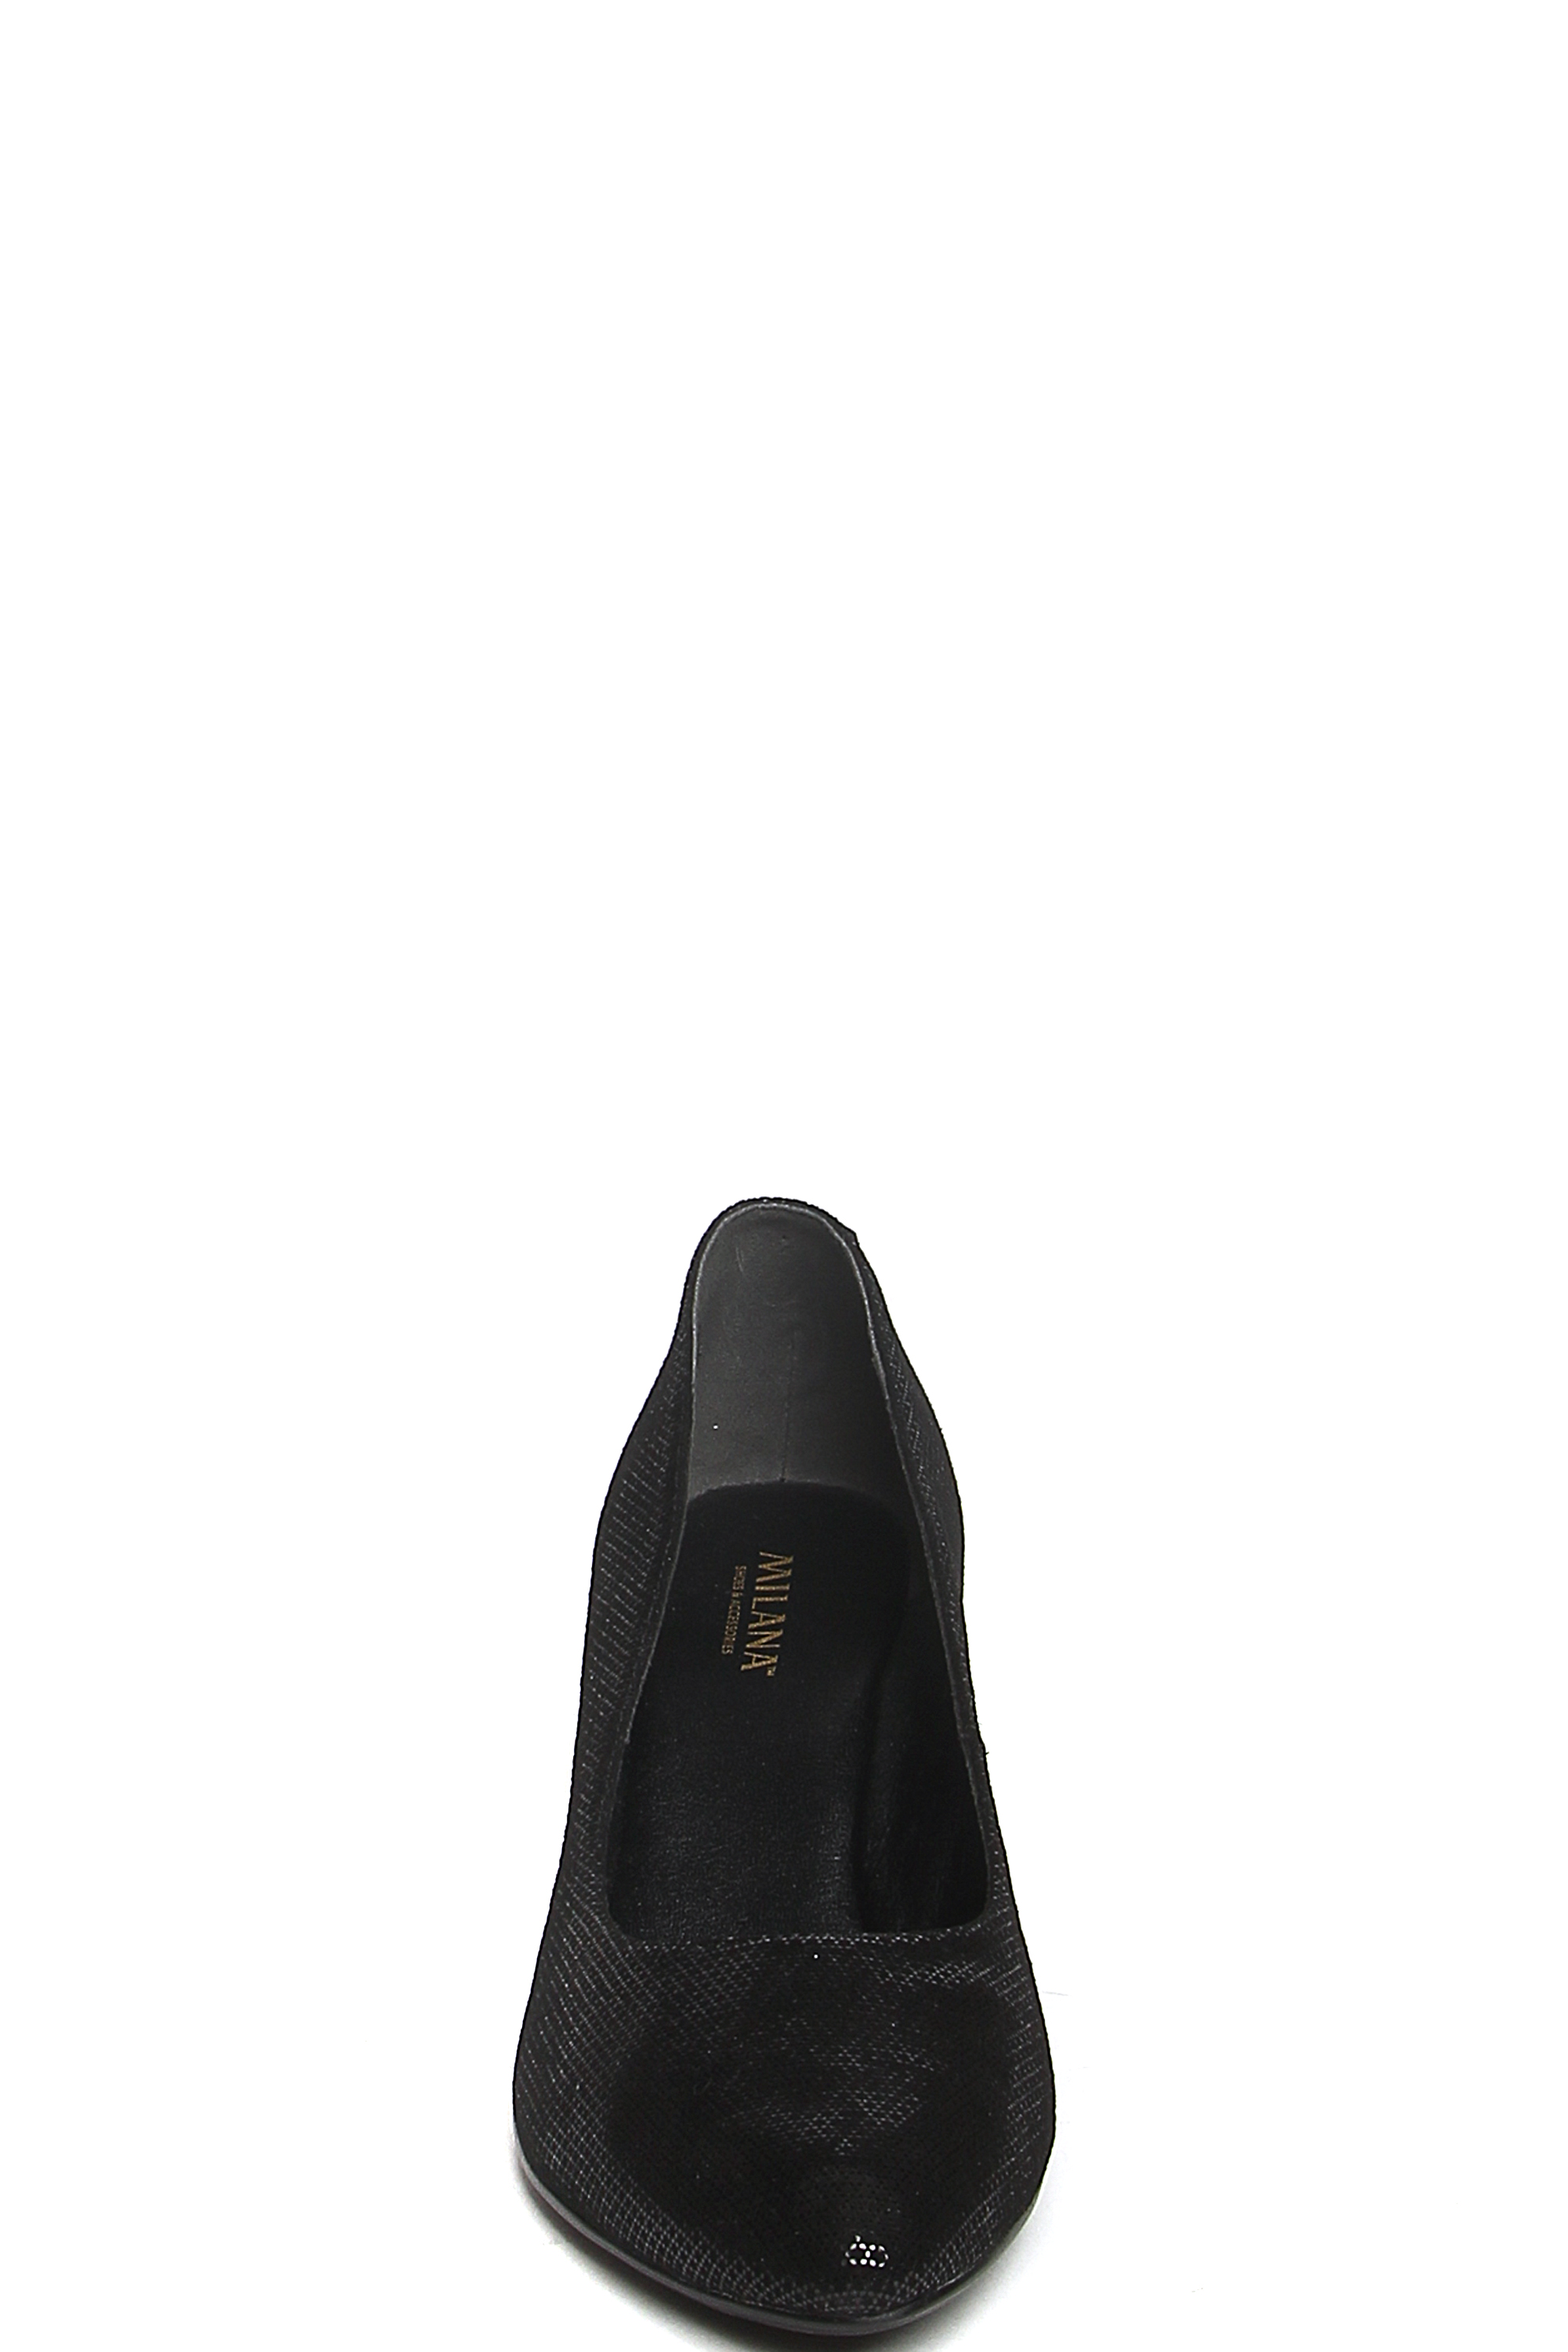 Туфли MILANA 181345-1-2101 черный - купить 8490